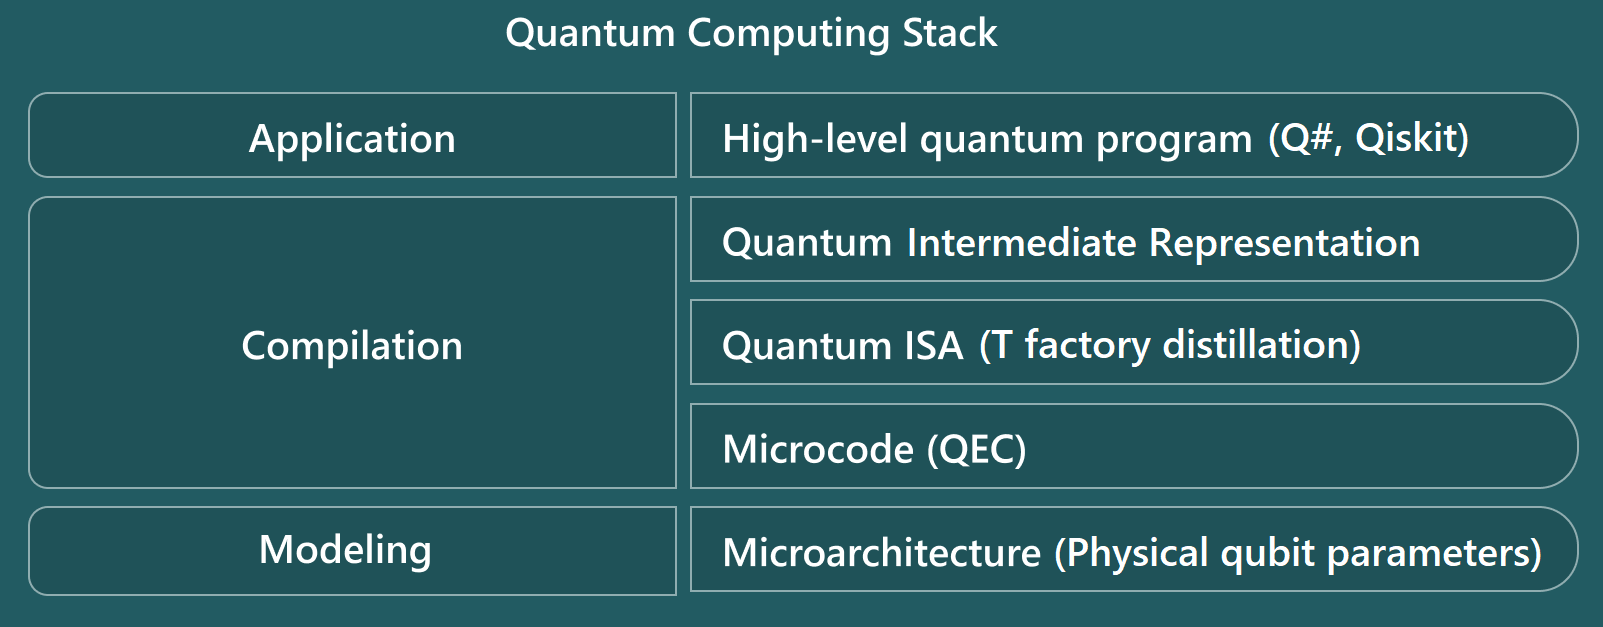 Схема, показывающая уровни стека квантовых вычислений оценщика ресурсов.